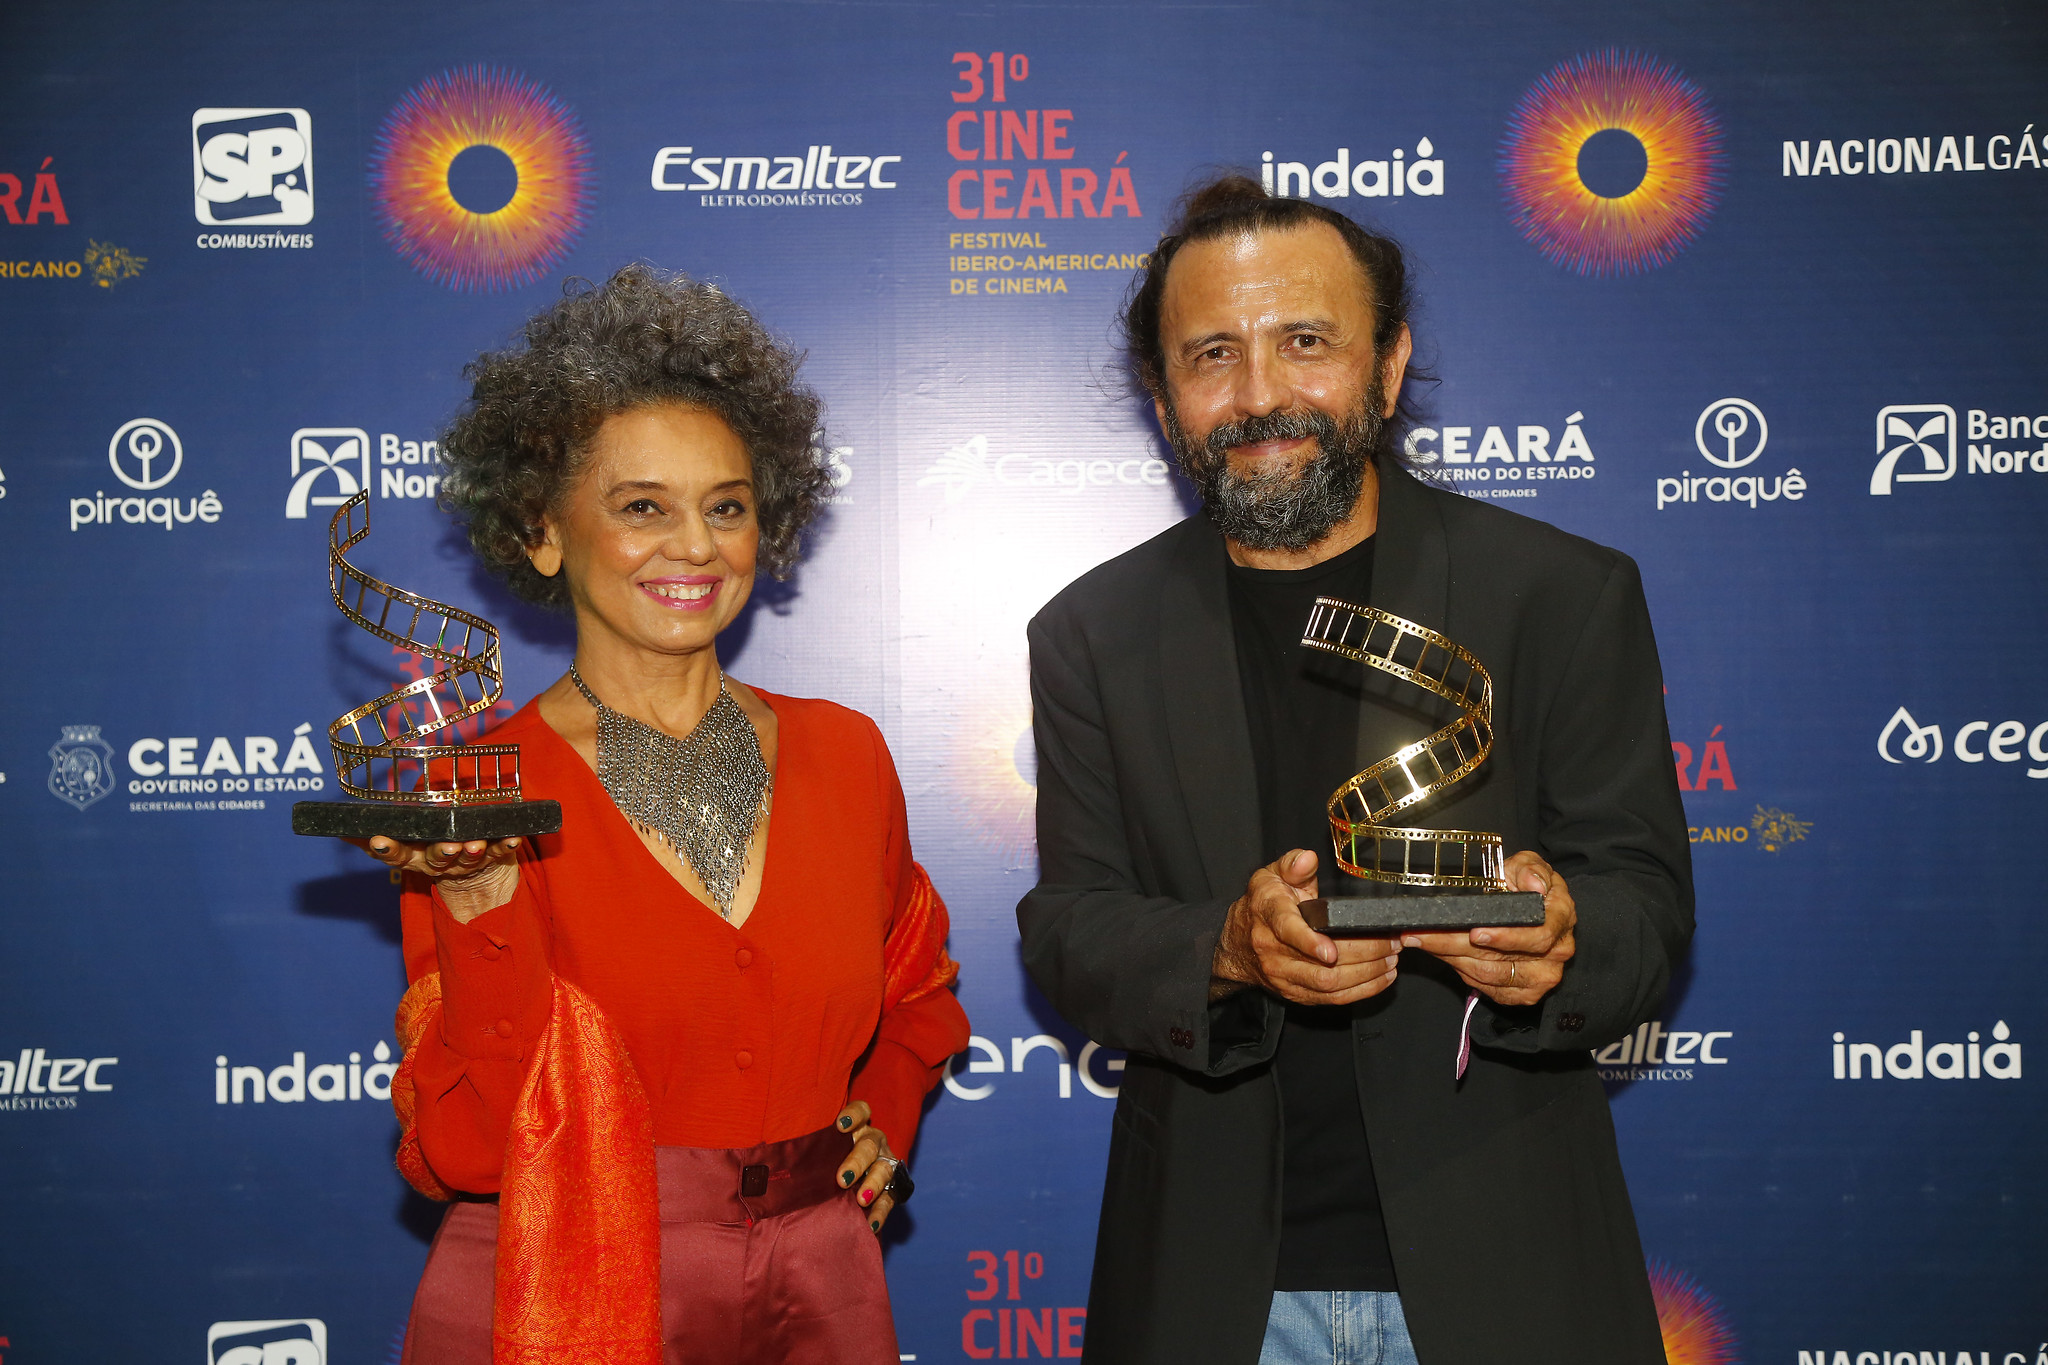 Marta Aurélia e Halder Gomes recebem o troféu Eusélio Oliveira na aberetura do Cine Ceará